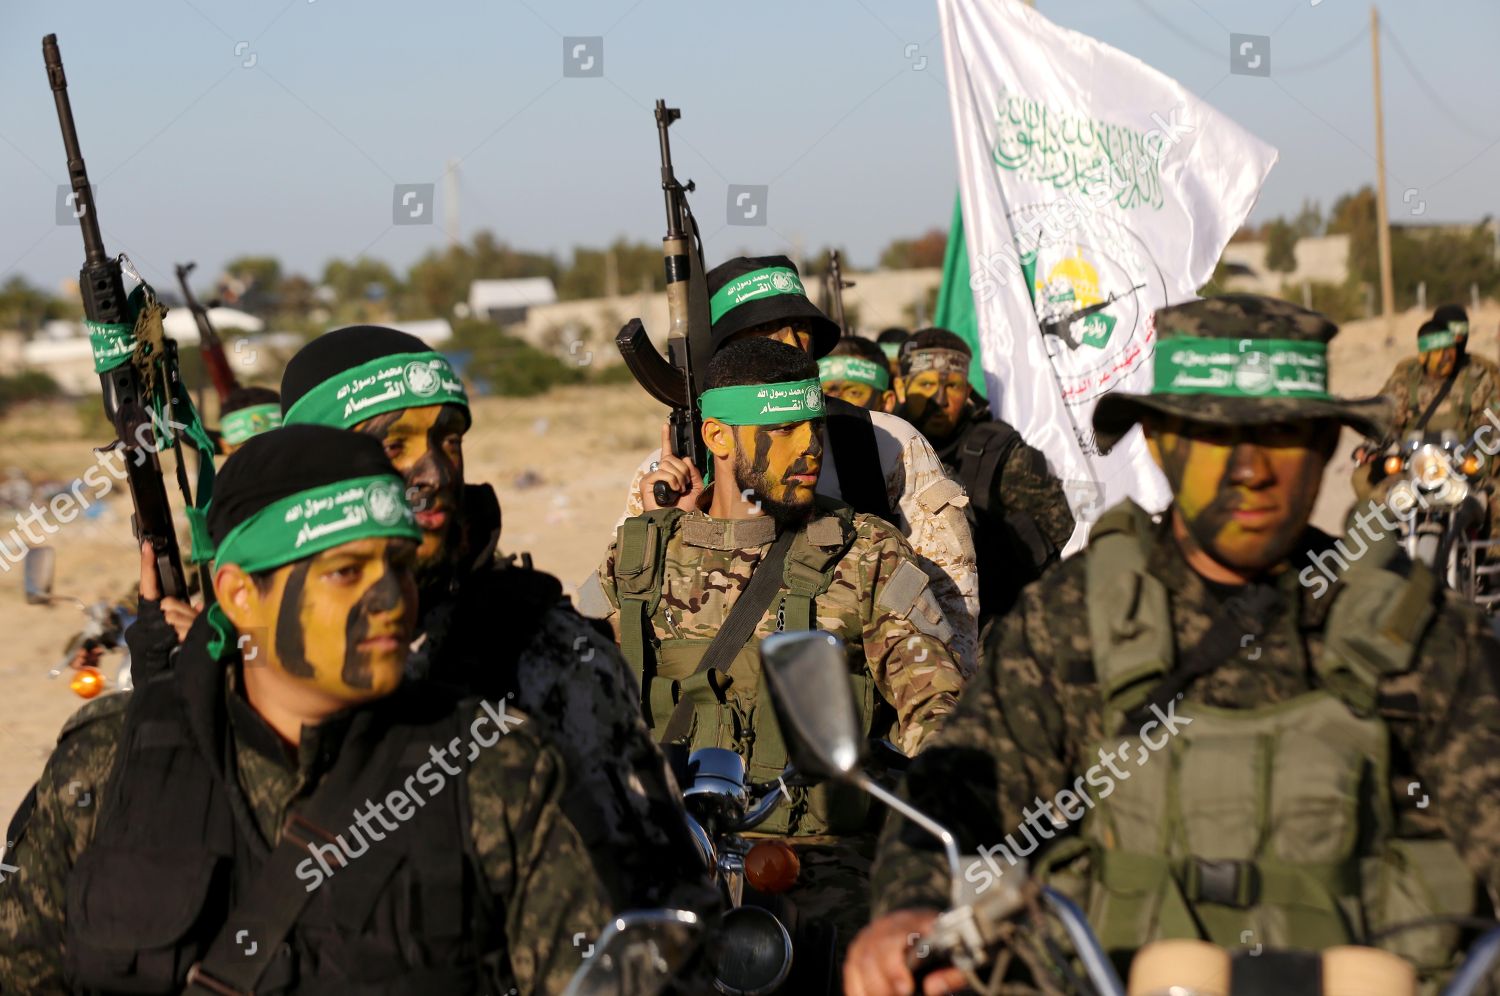 Al qassam brigades